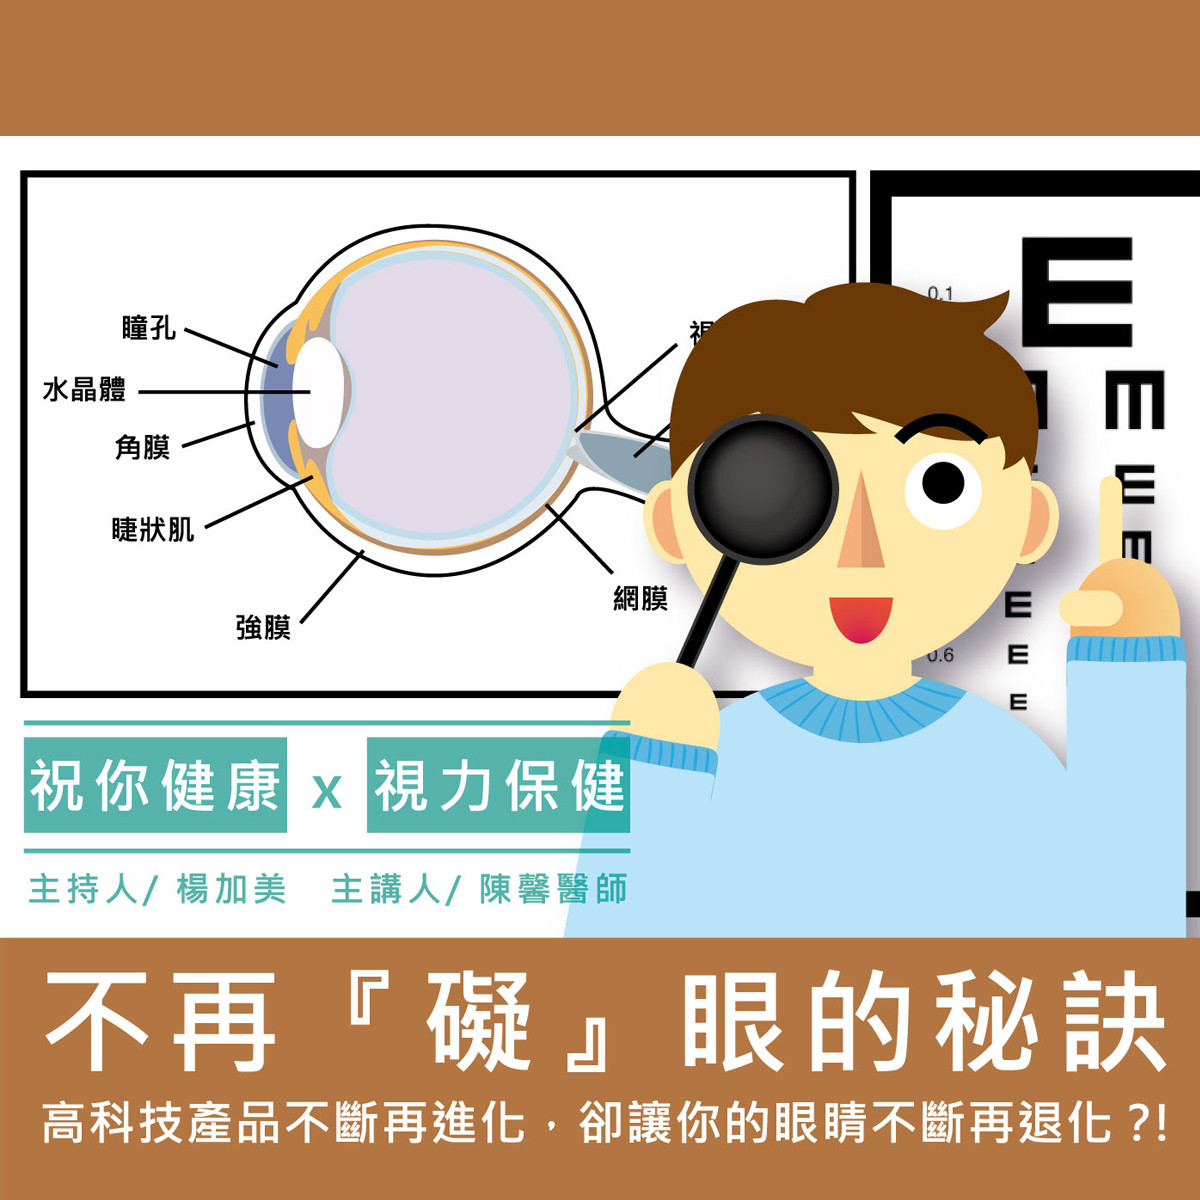 【祝你健康】視力保健 - 5.飛蚊症封面圖